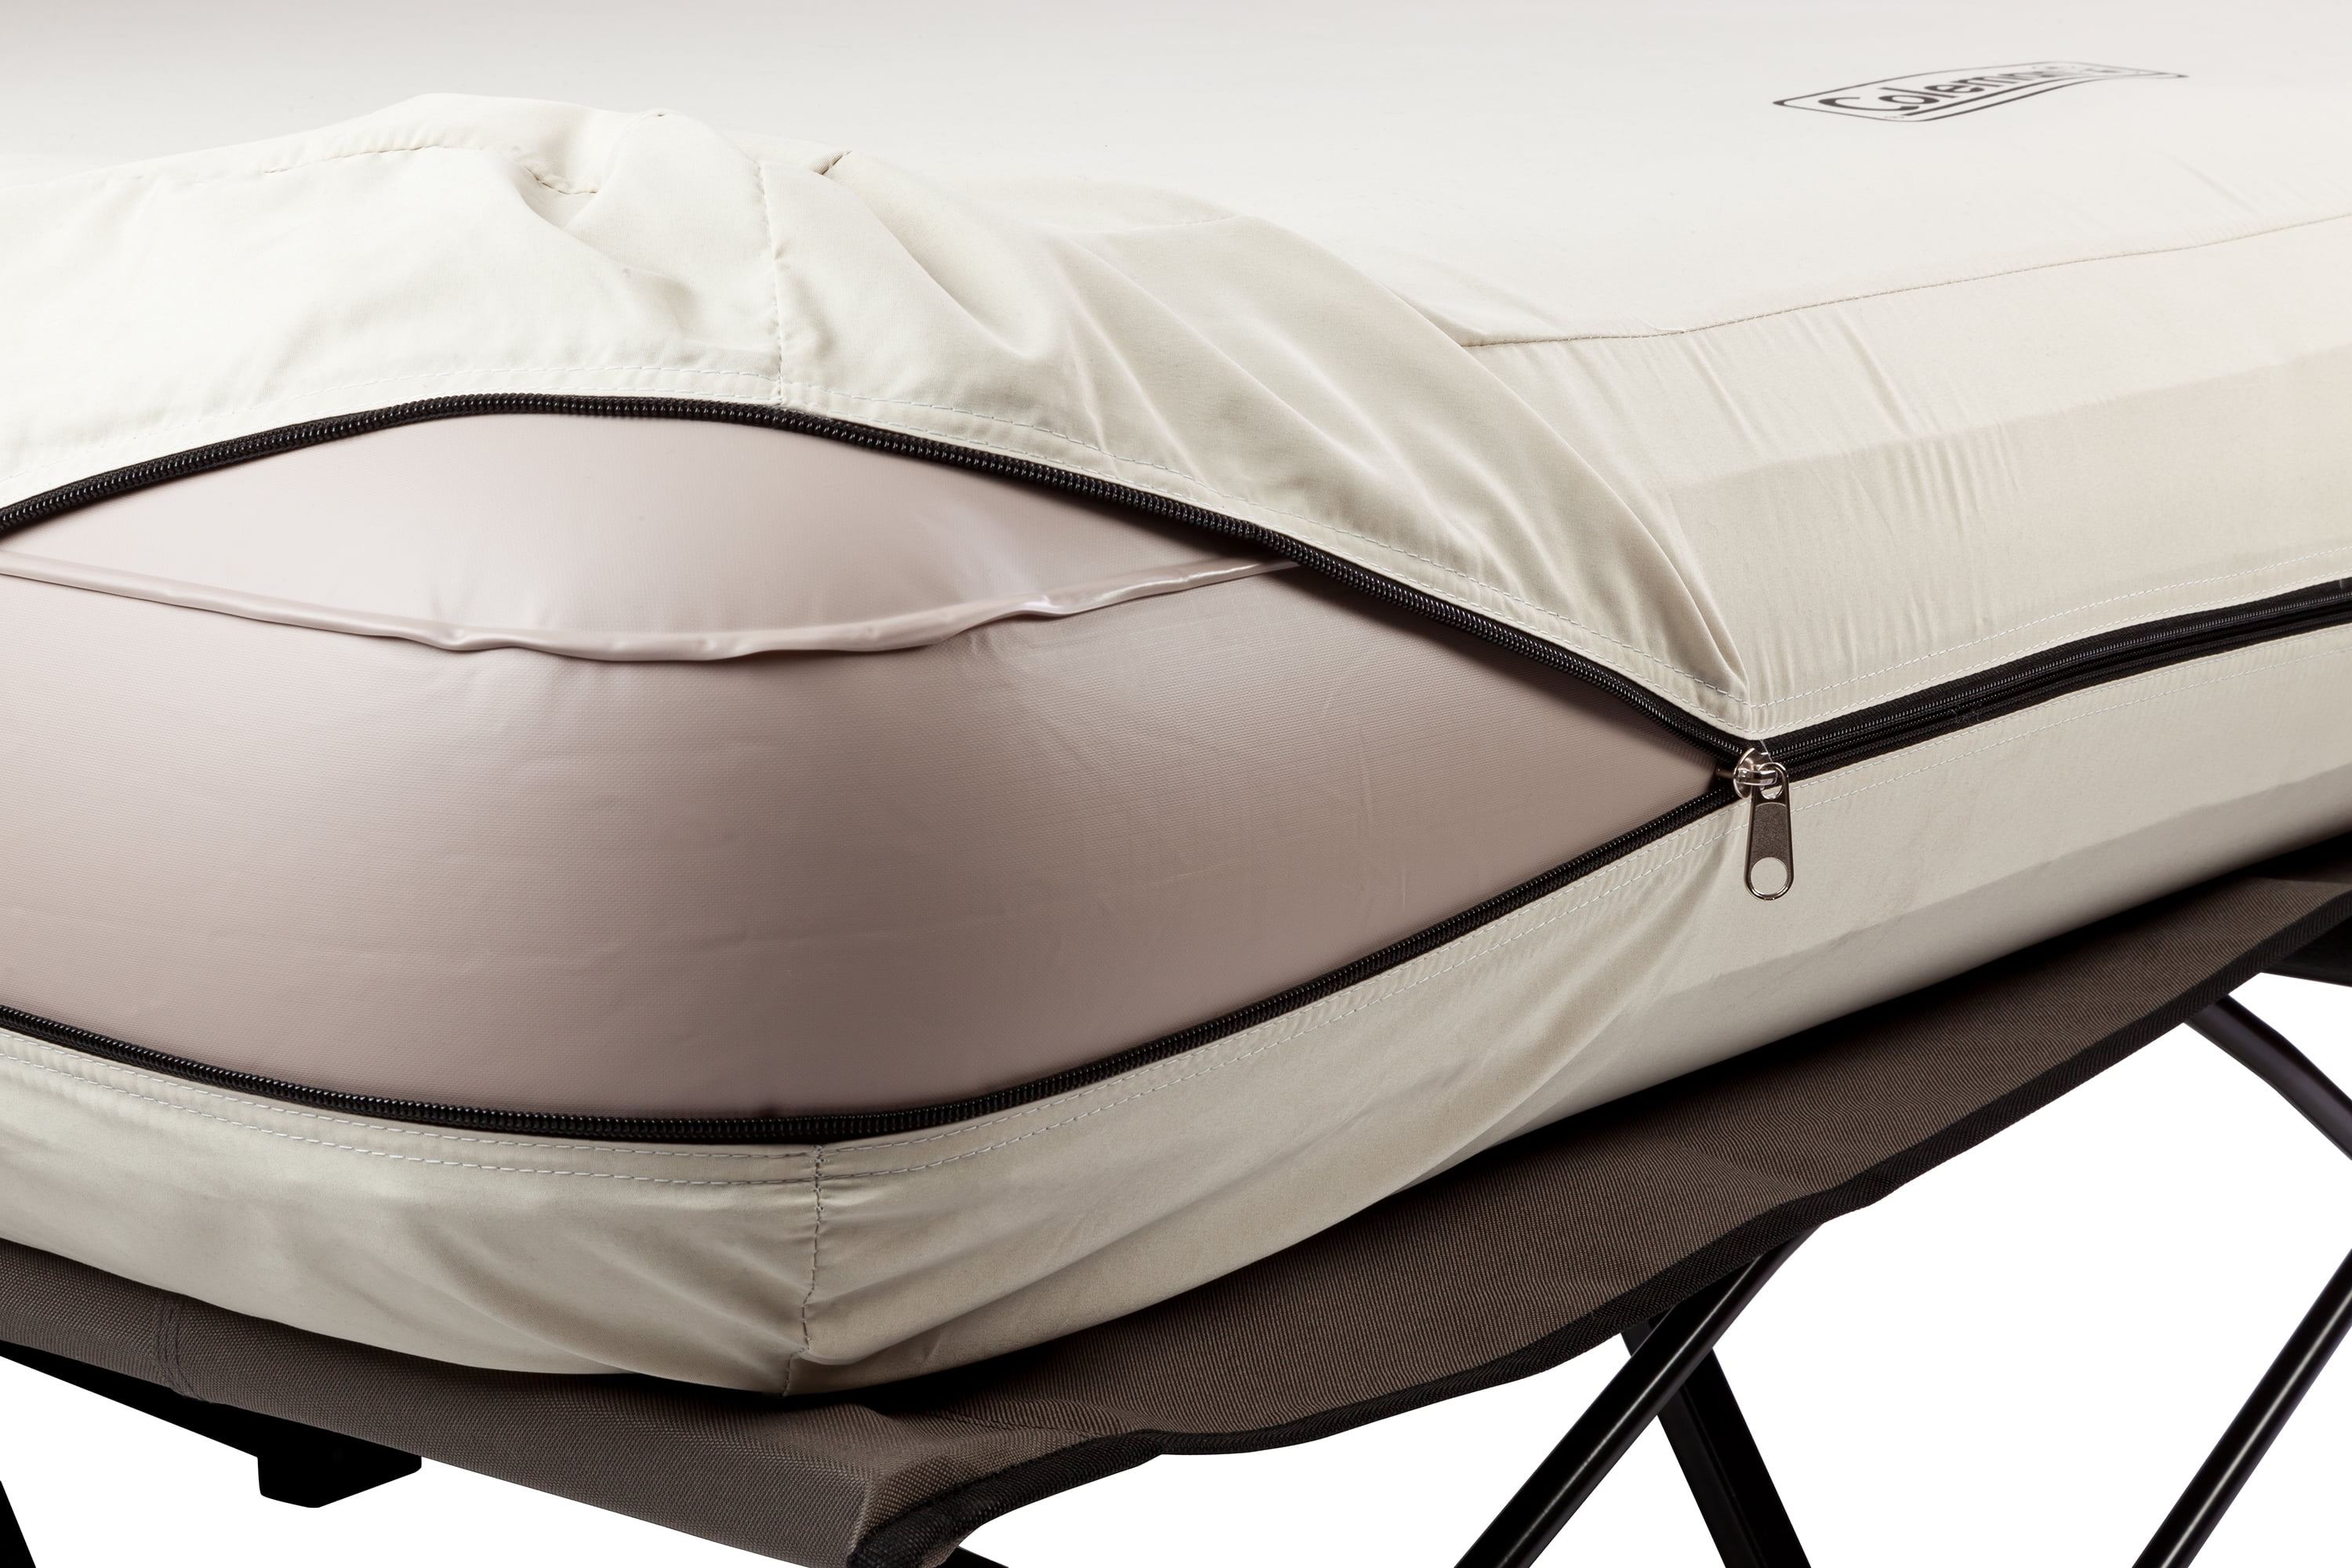 coleman cot size air mattress